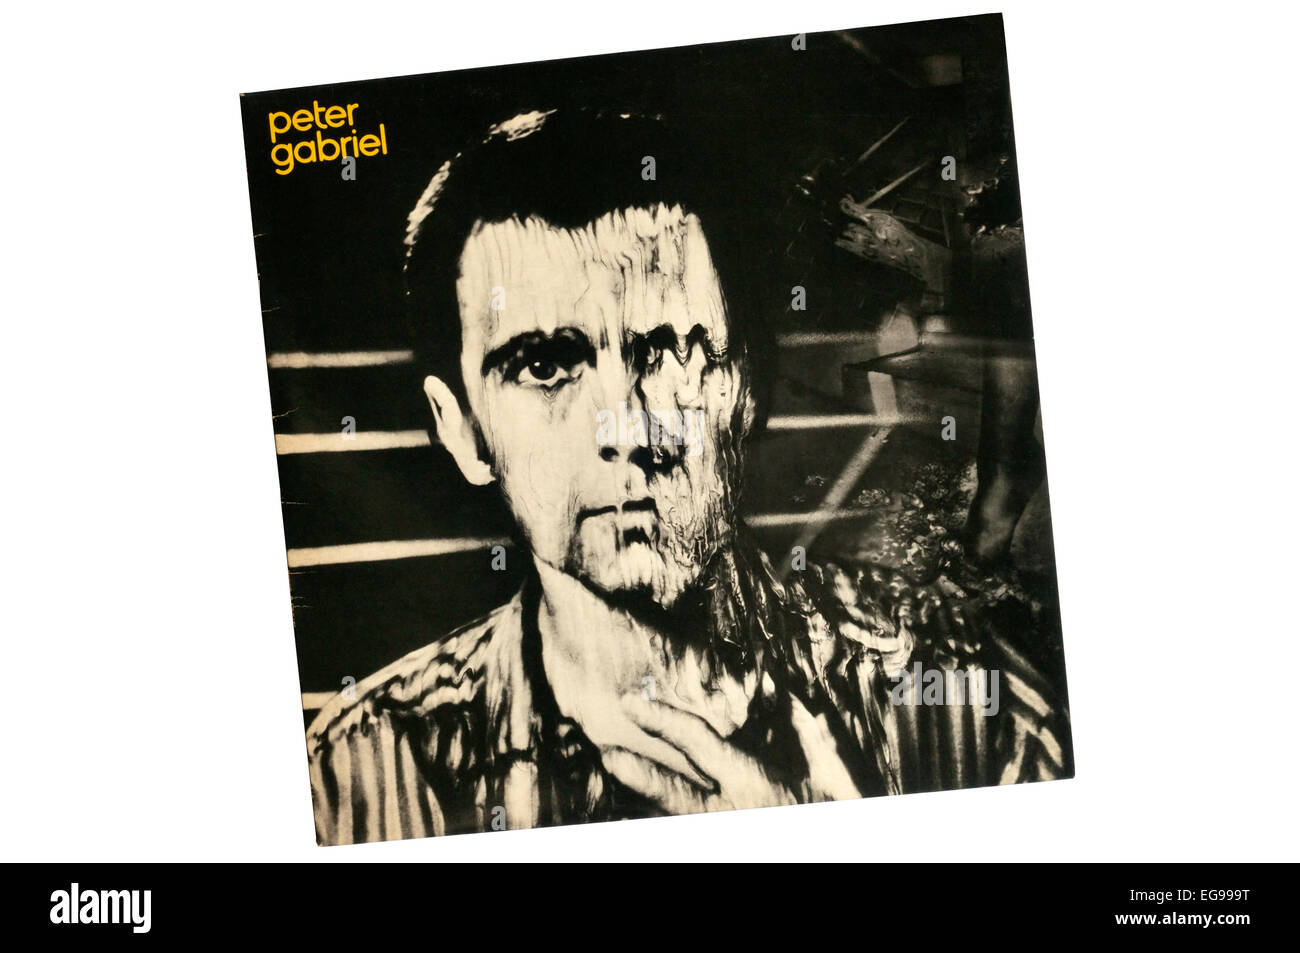 Peter Gabriel es tercer álbum por el músico británico Peter Gabriel, lanzado en mayo de 1980. La fotografía está cubierta por Hipgnosis. Foto de stock